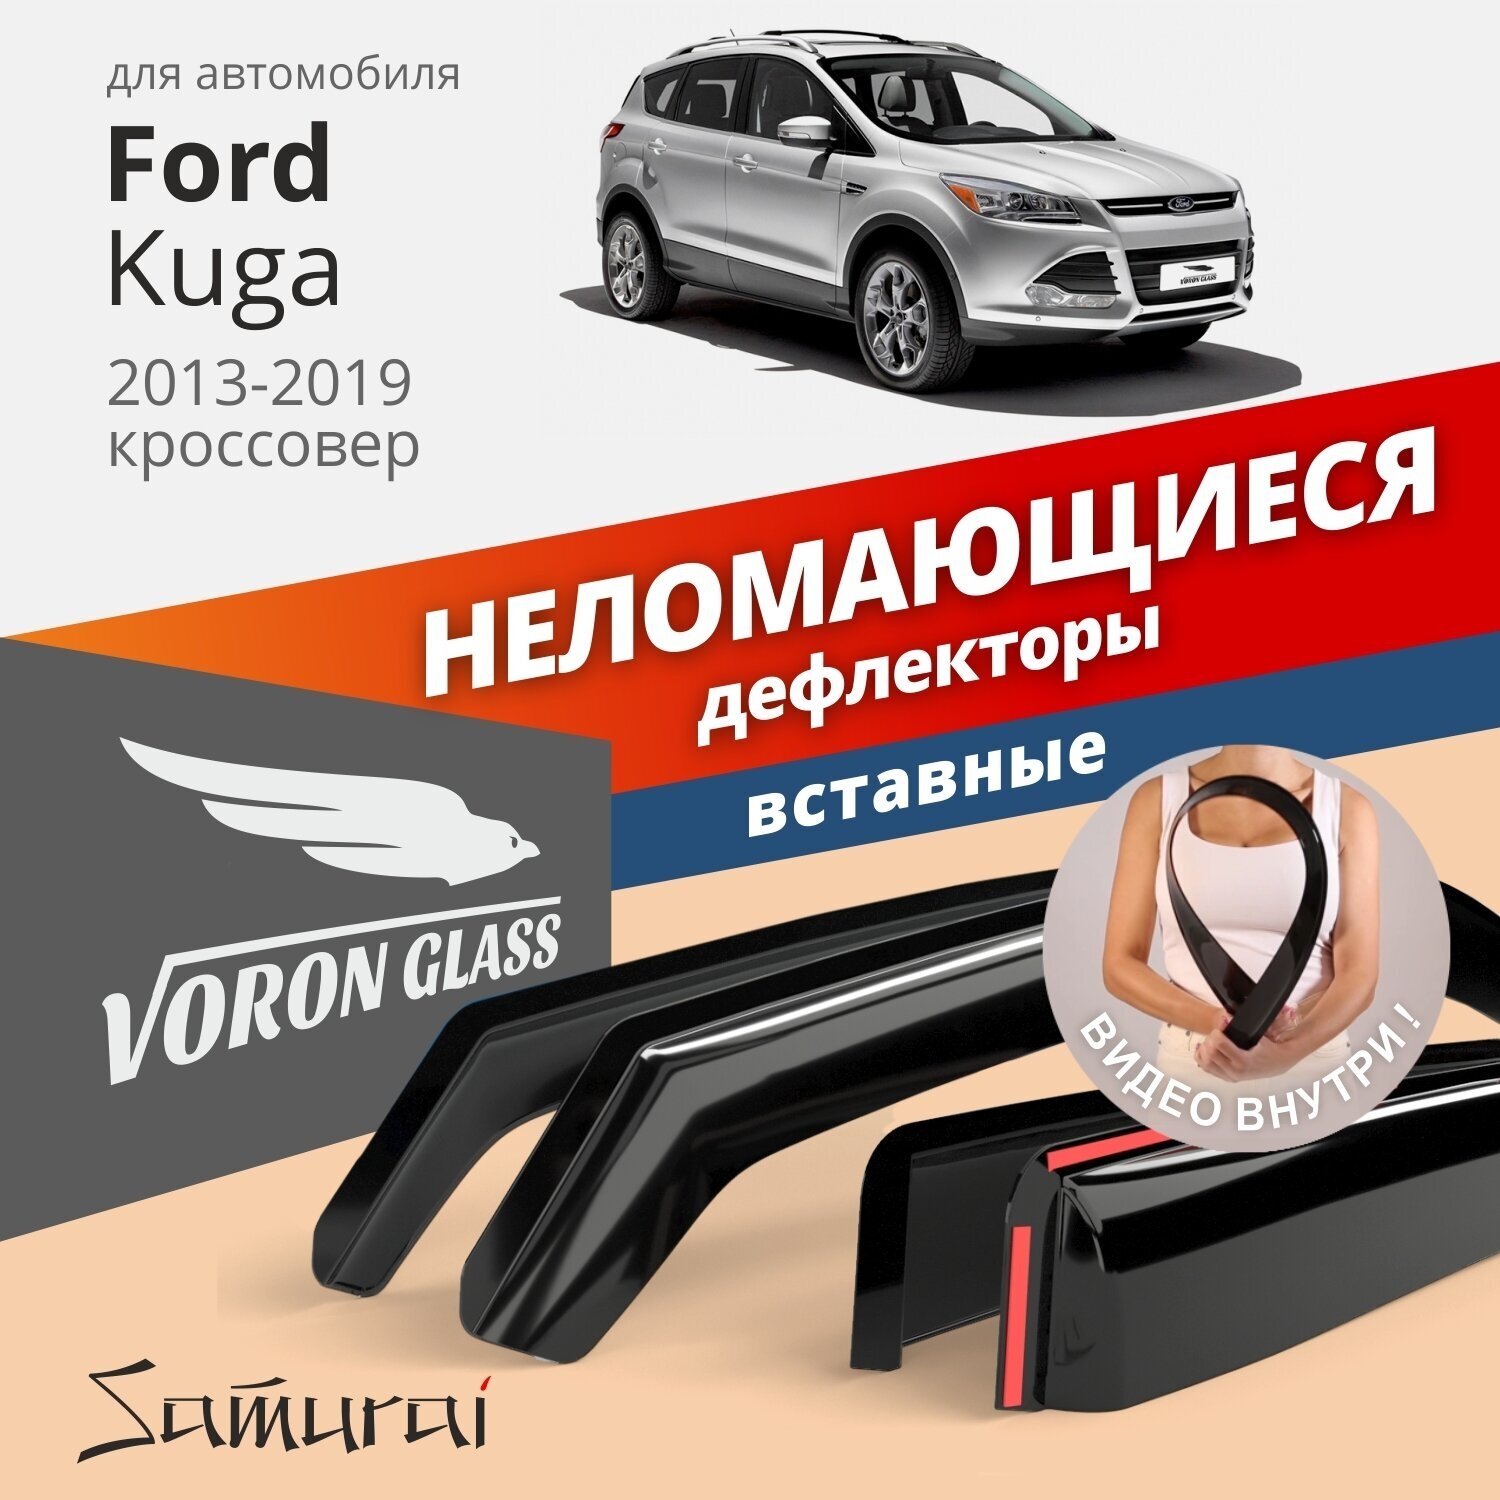 Дефлекторы окон неломающиеся VORON GLASS серия Samurai для Ford Kuga 2013-2019 вставные 4 шт.